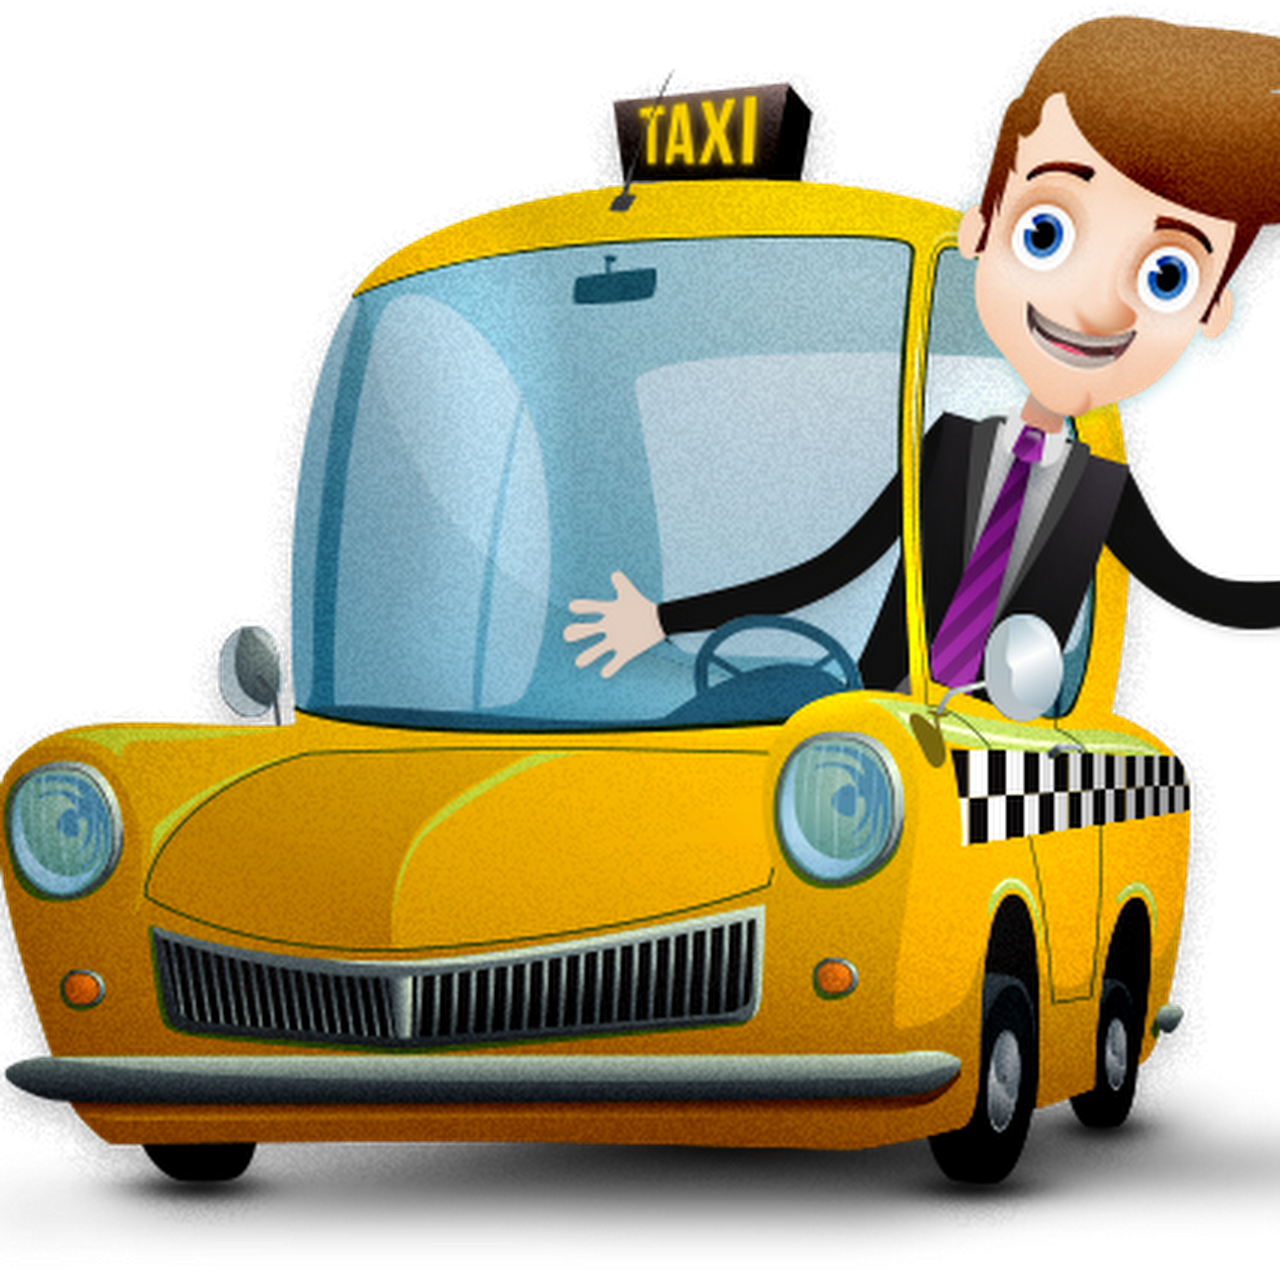 Шофер для детей. Мультяшная машинка такси. Шофер мультяшный. Профессия таксист для детей. Водитель детского такси